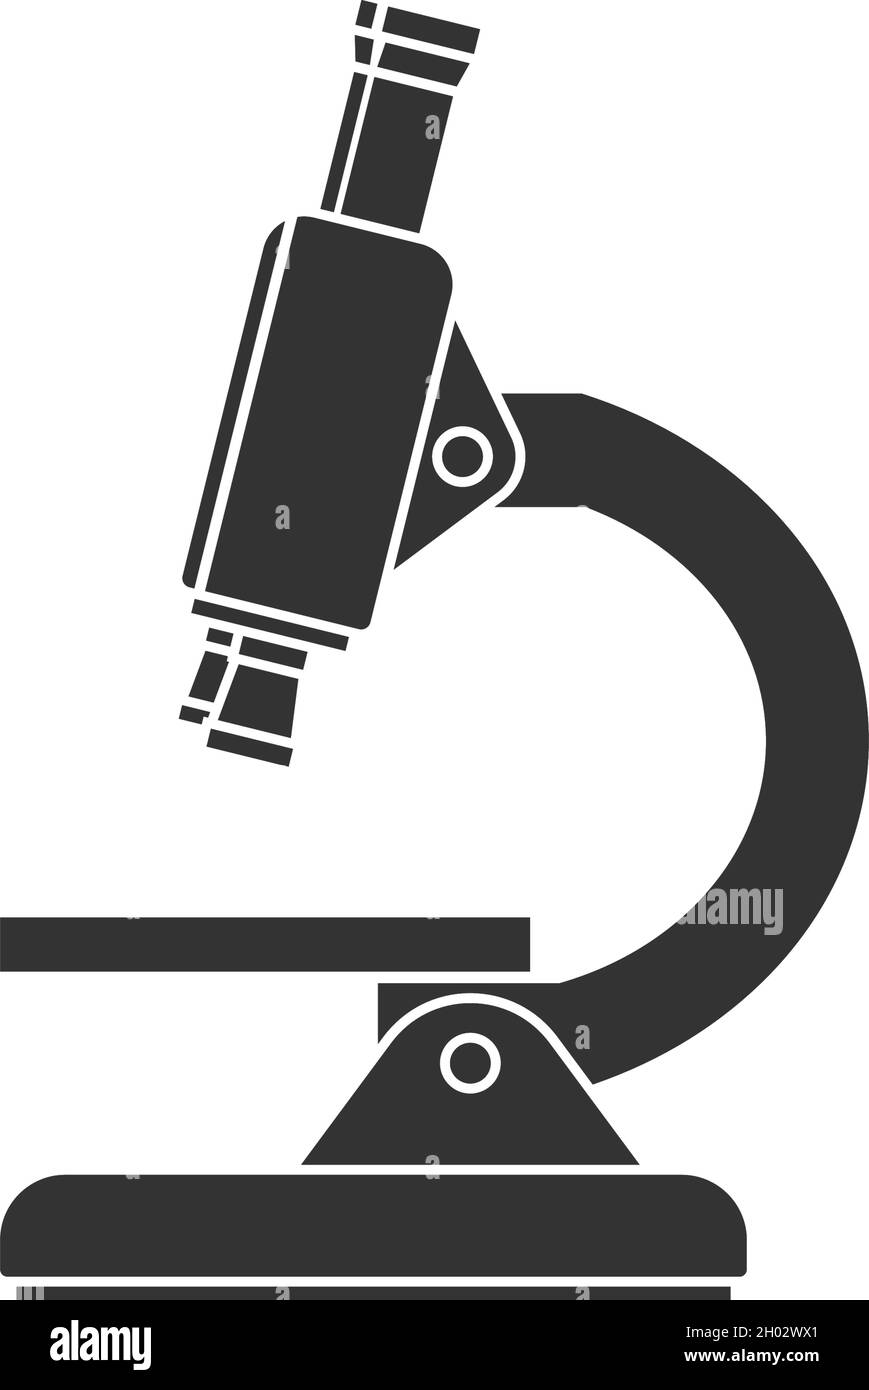 Microscope icon design template vector illustration Stock Vector